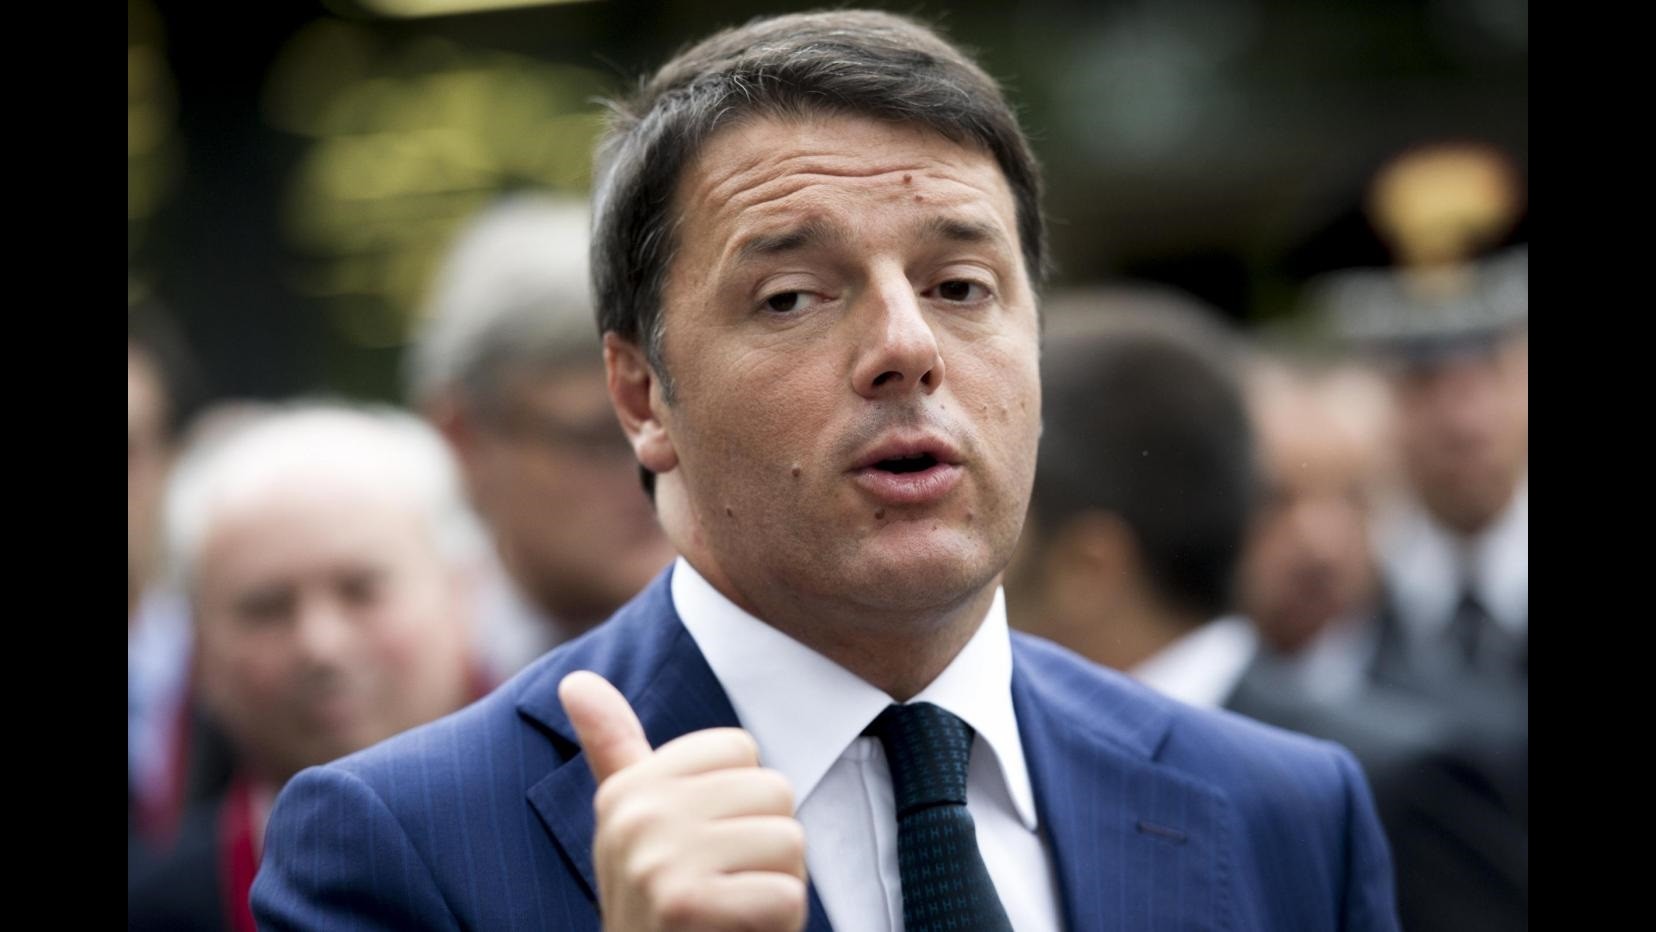 Lavoro, Renzi negli Usa: Far arrabbiare qualcuno, ma fare star bene tutti